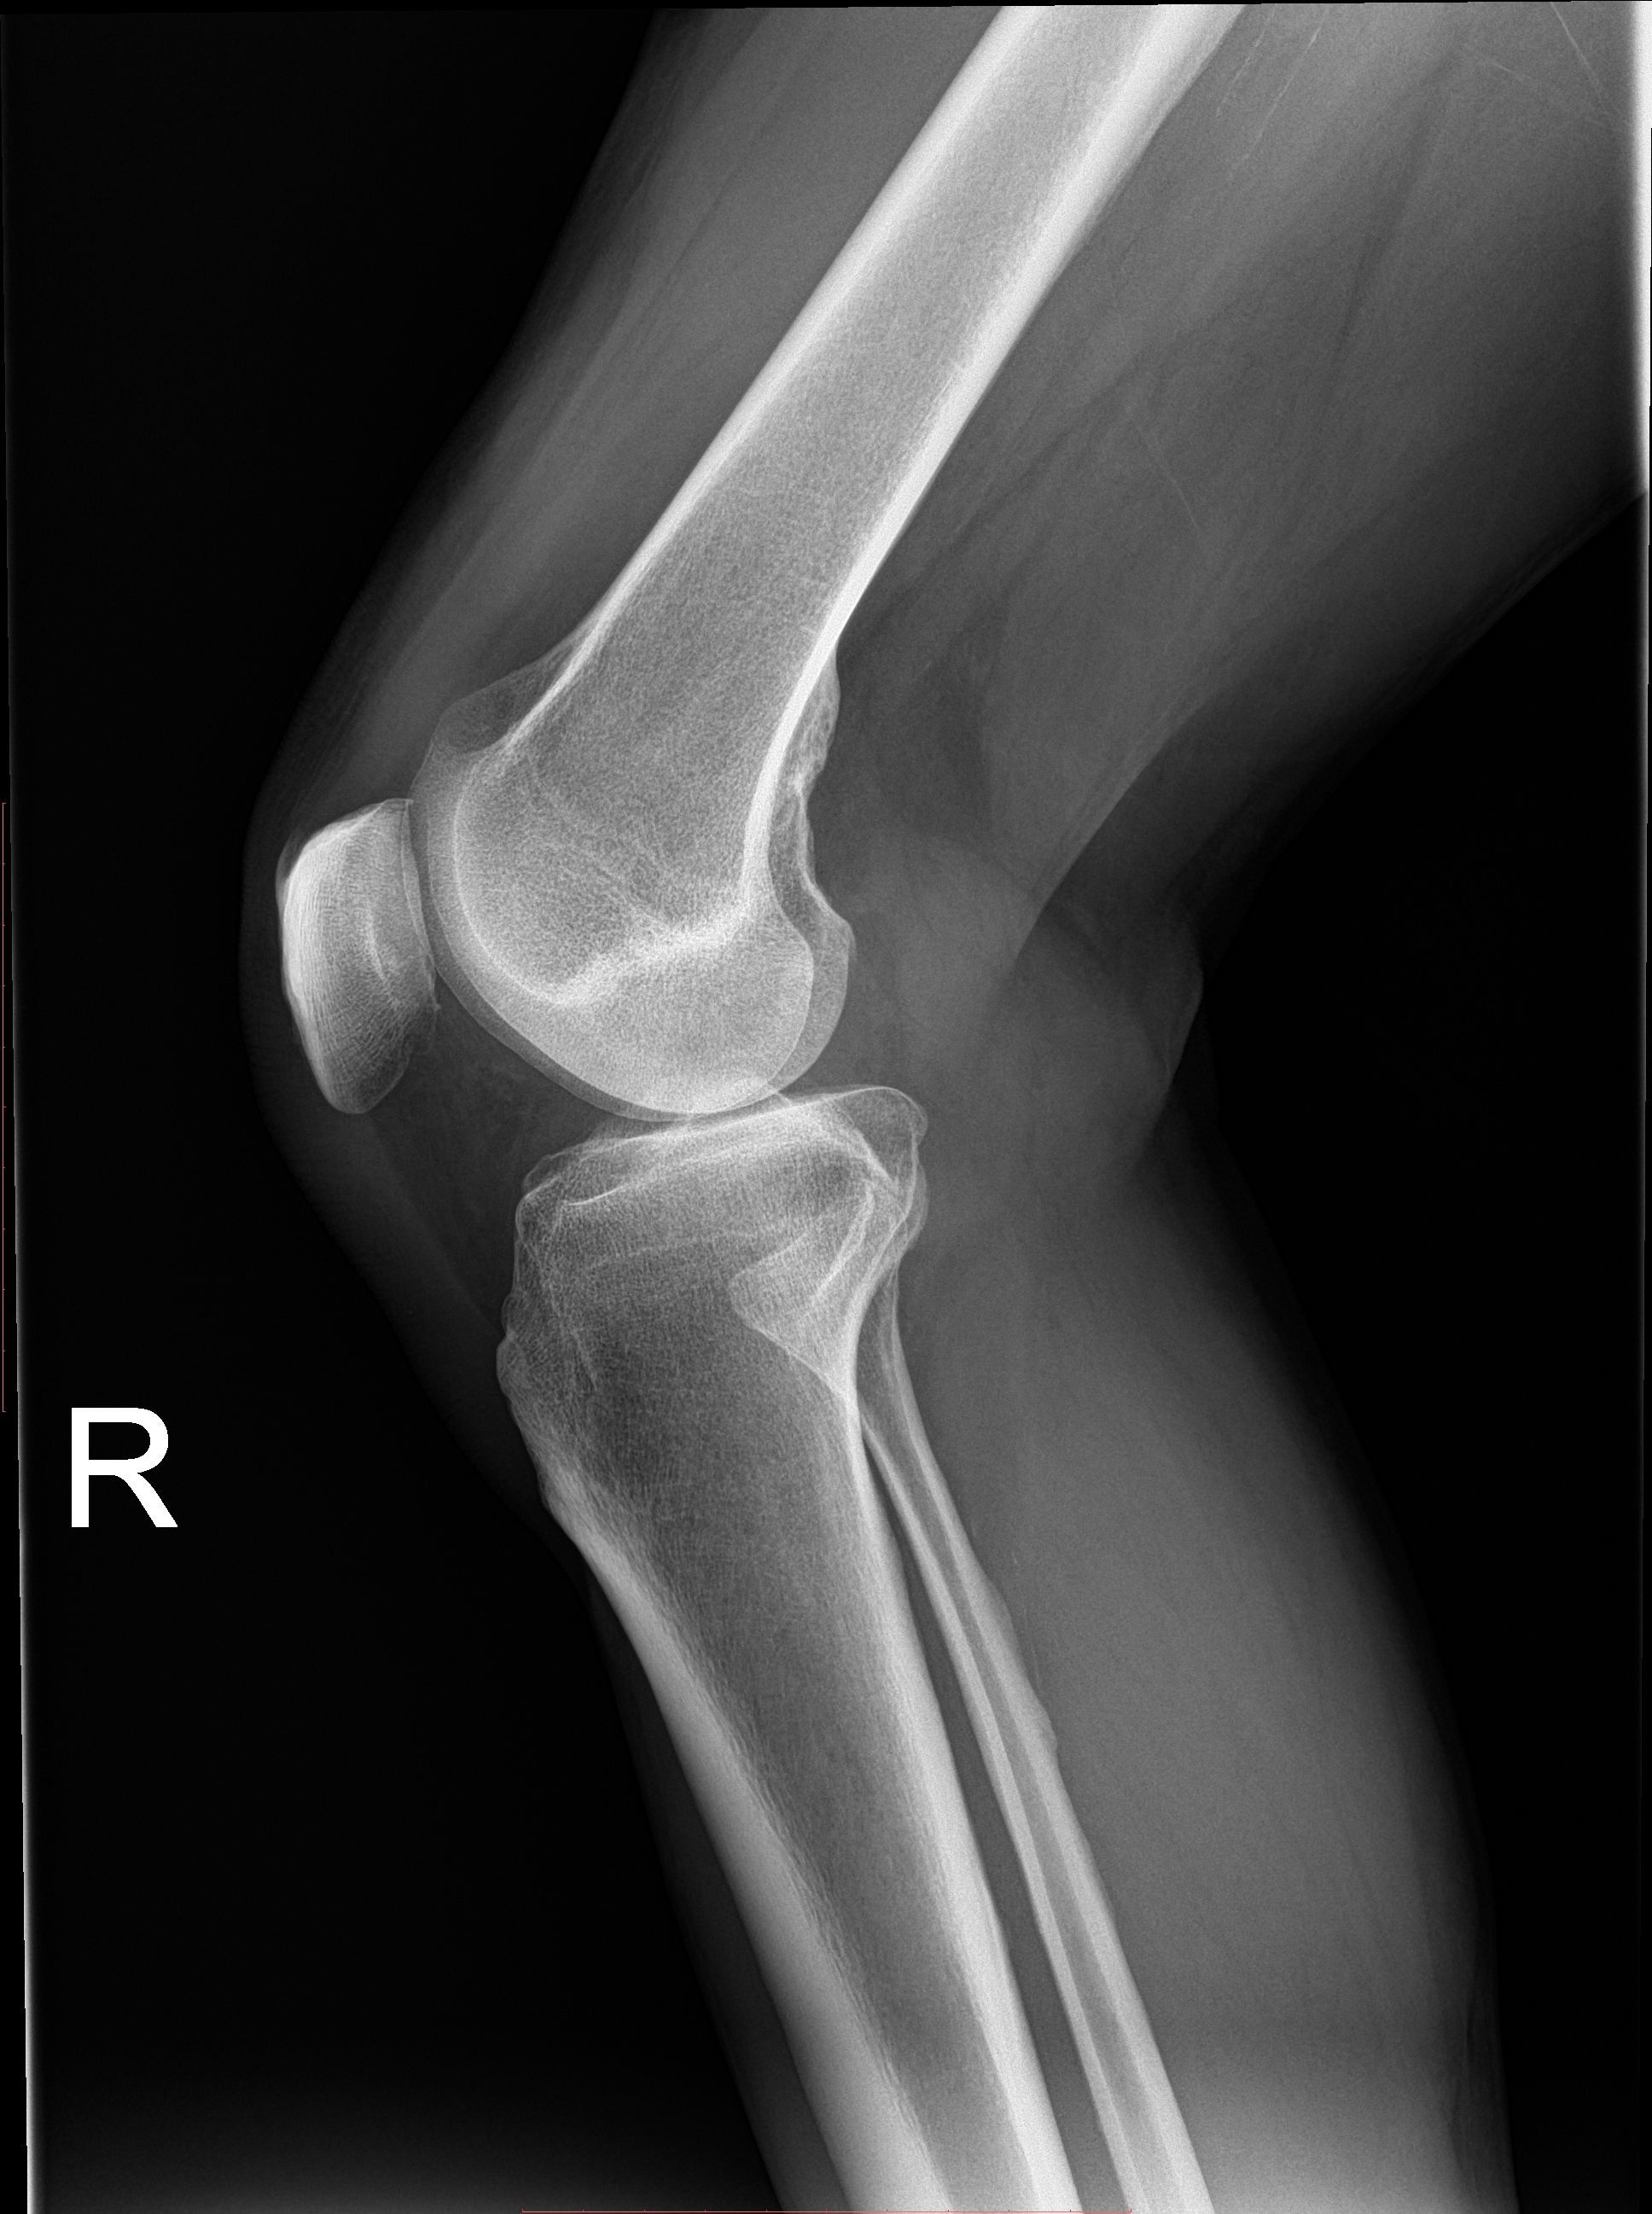 Rayos X de una rodilla